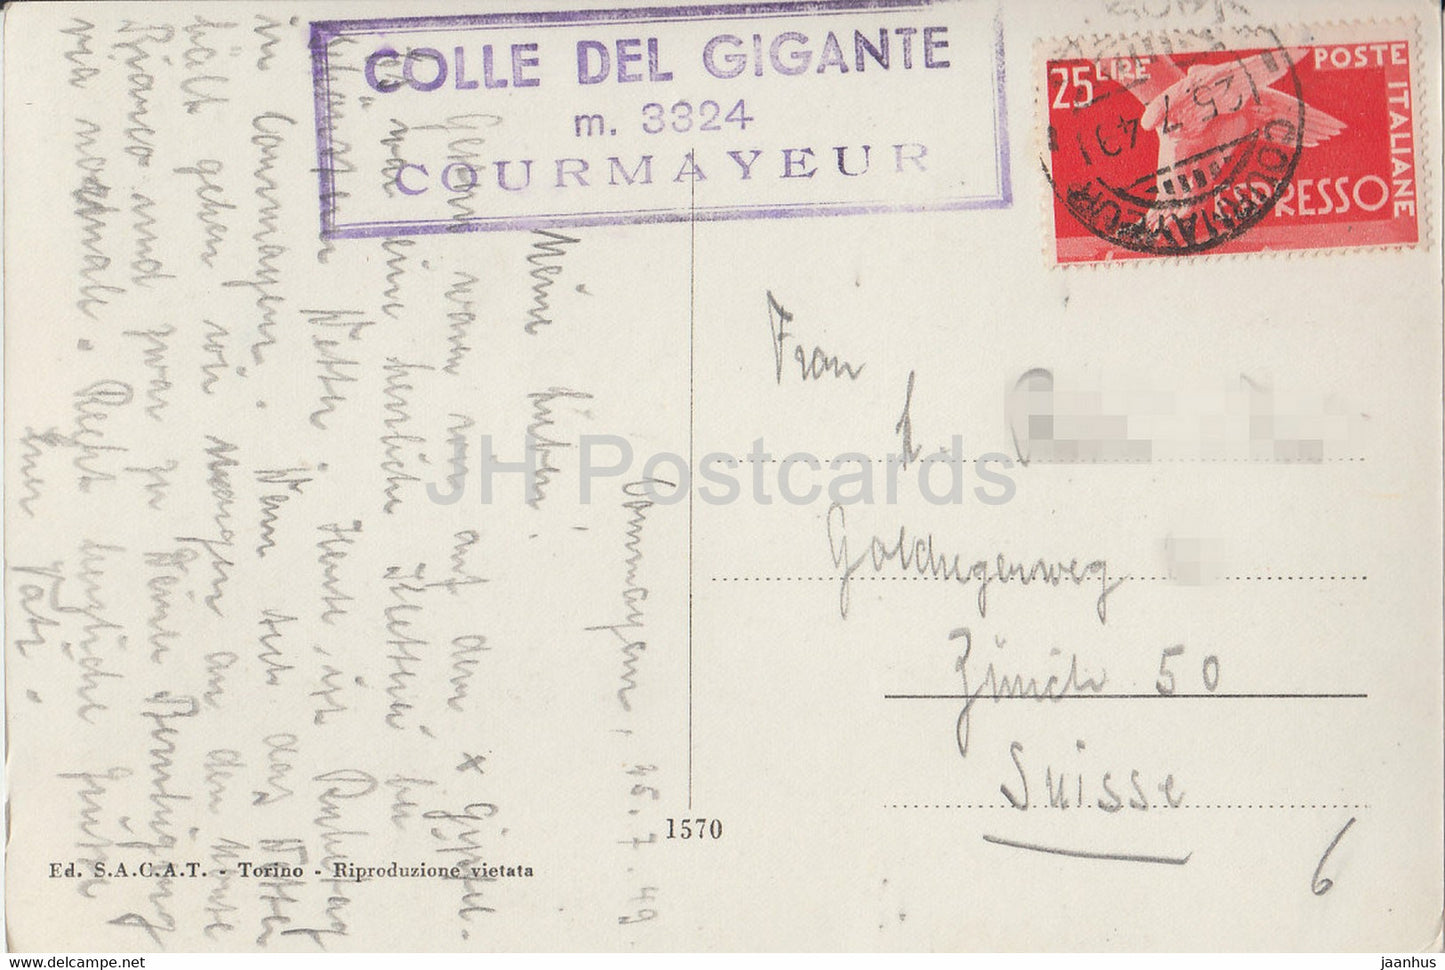 Colle e Dente del Gigante 4014 m - old postcard - 1949 - Italy - Italia - used